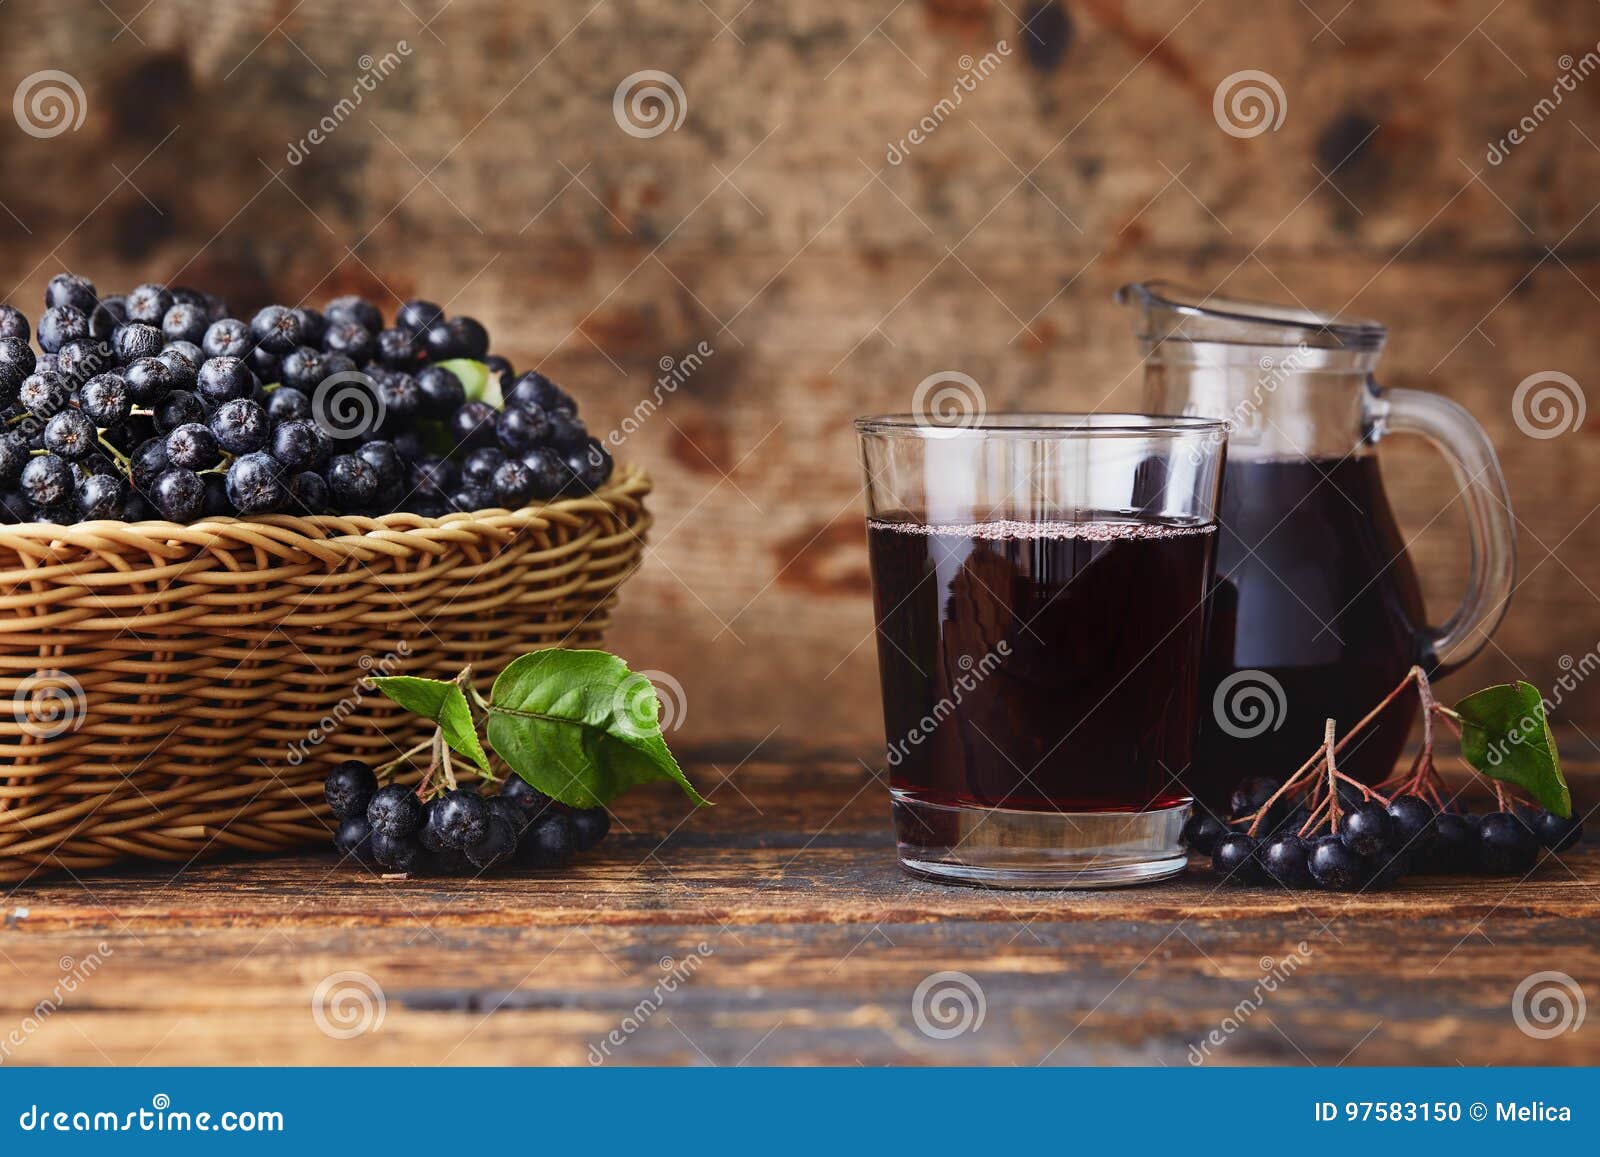 aronia berry juice